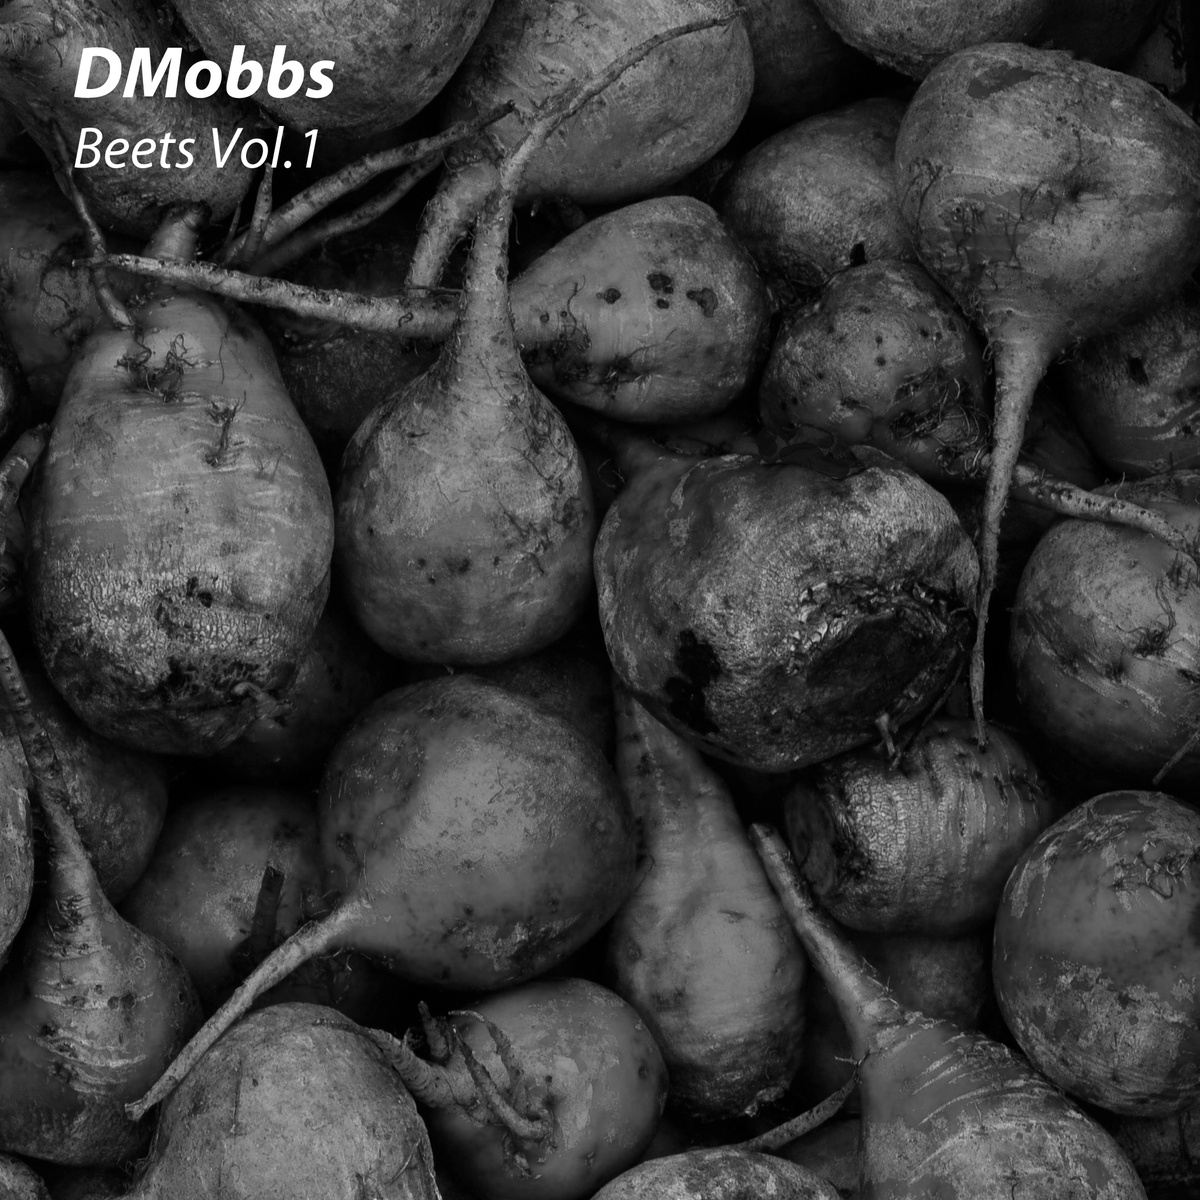 DMobbs "Beets Vol. 1" Release | @dmobbs1